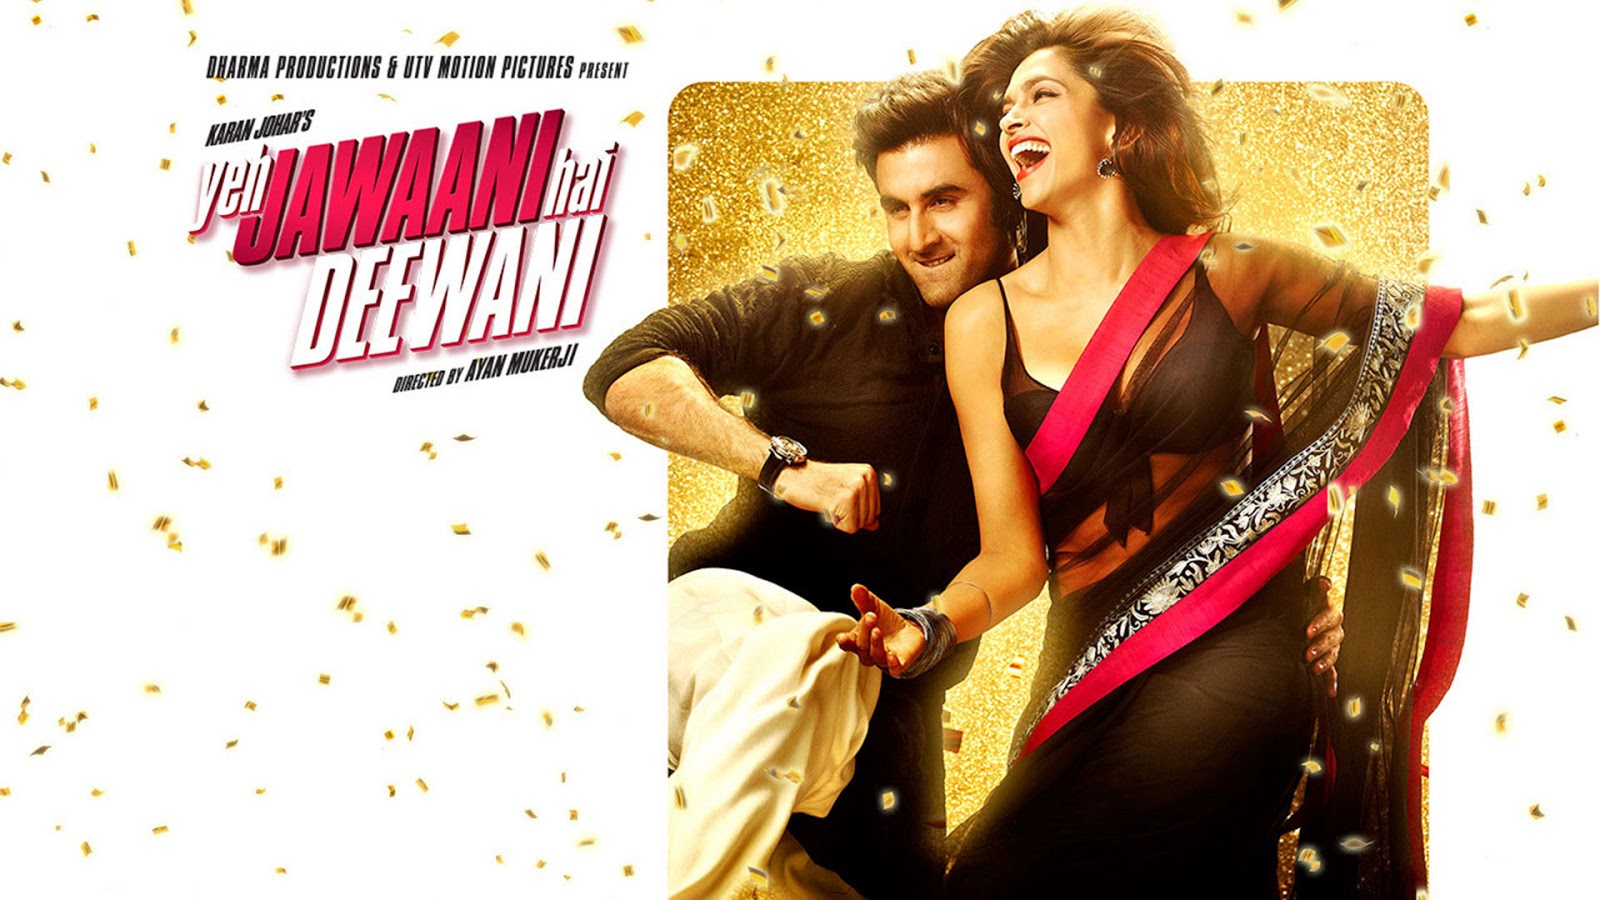 Download Film Yeh Jawaani Hai Deewani Full Movies